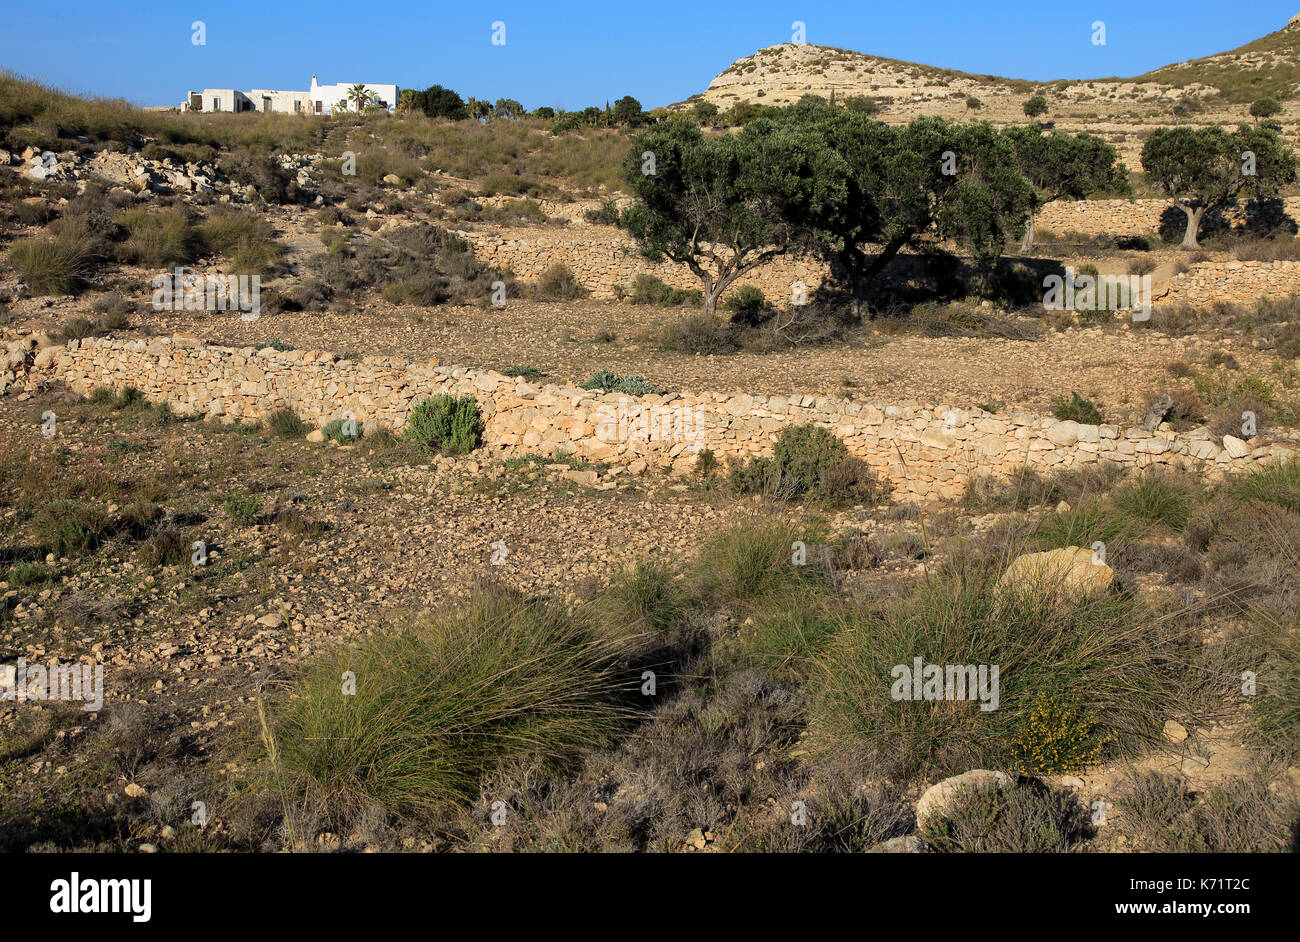 Olivos en tierras semi desierto, Rodalquilar, el parque natural Cabo de Gata, Almería, España Foto de stock